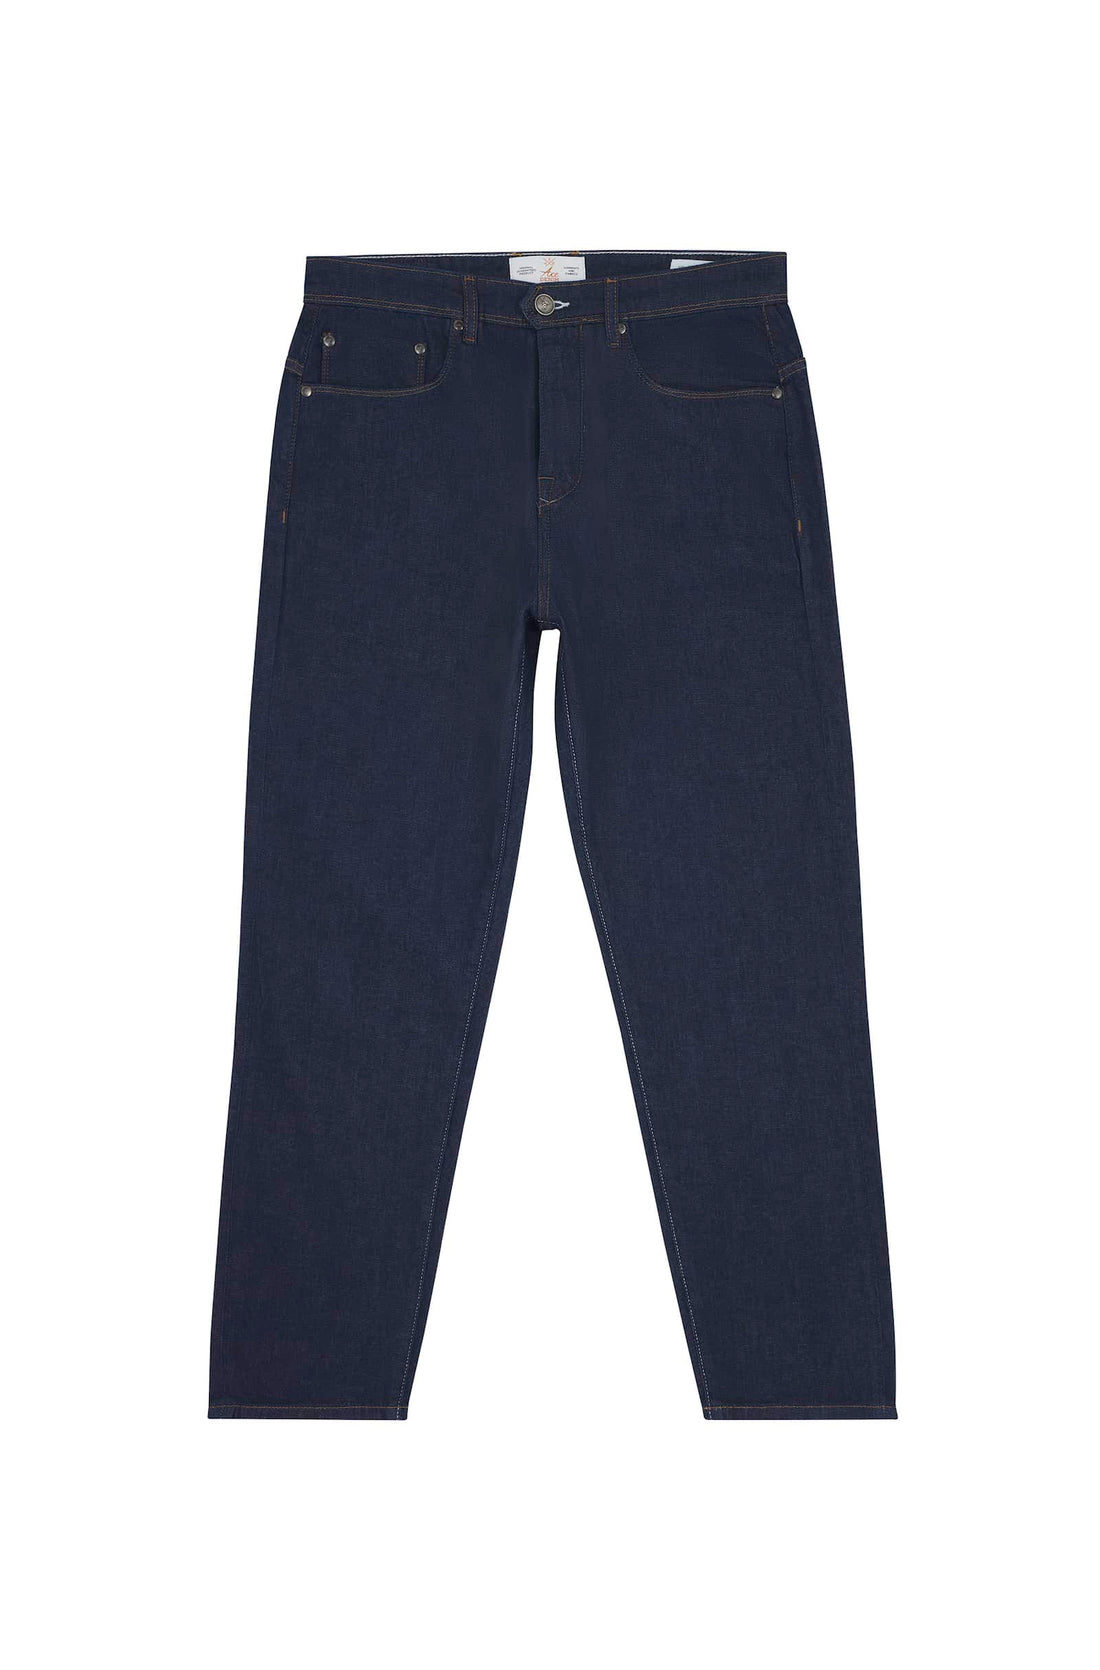 jeans homme coupe large bleu foncé tissu italien